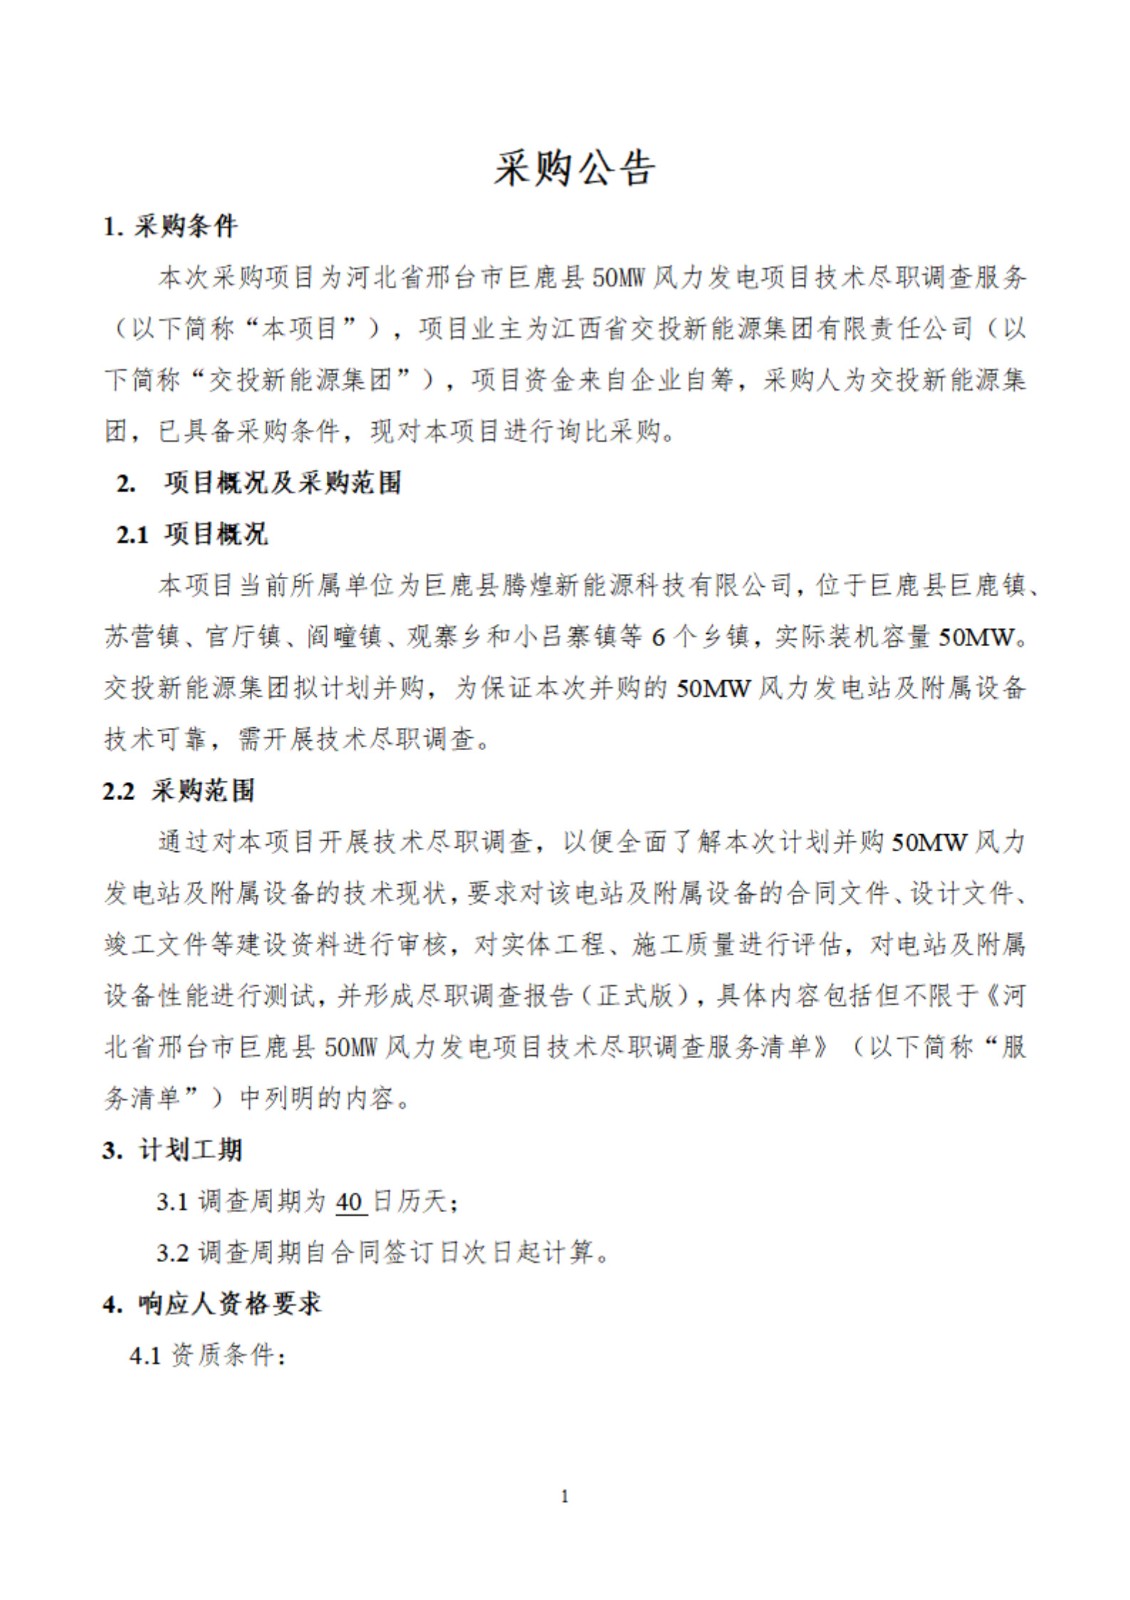 河北省邢台市巨鹿县50MW风力发电项目技术尽职调查服务采购公告